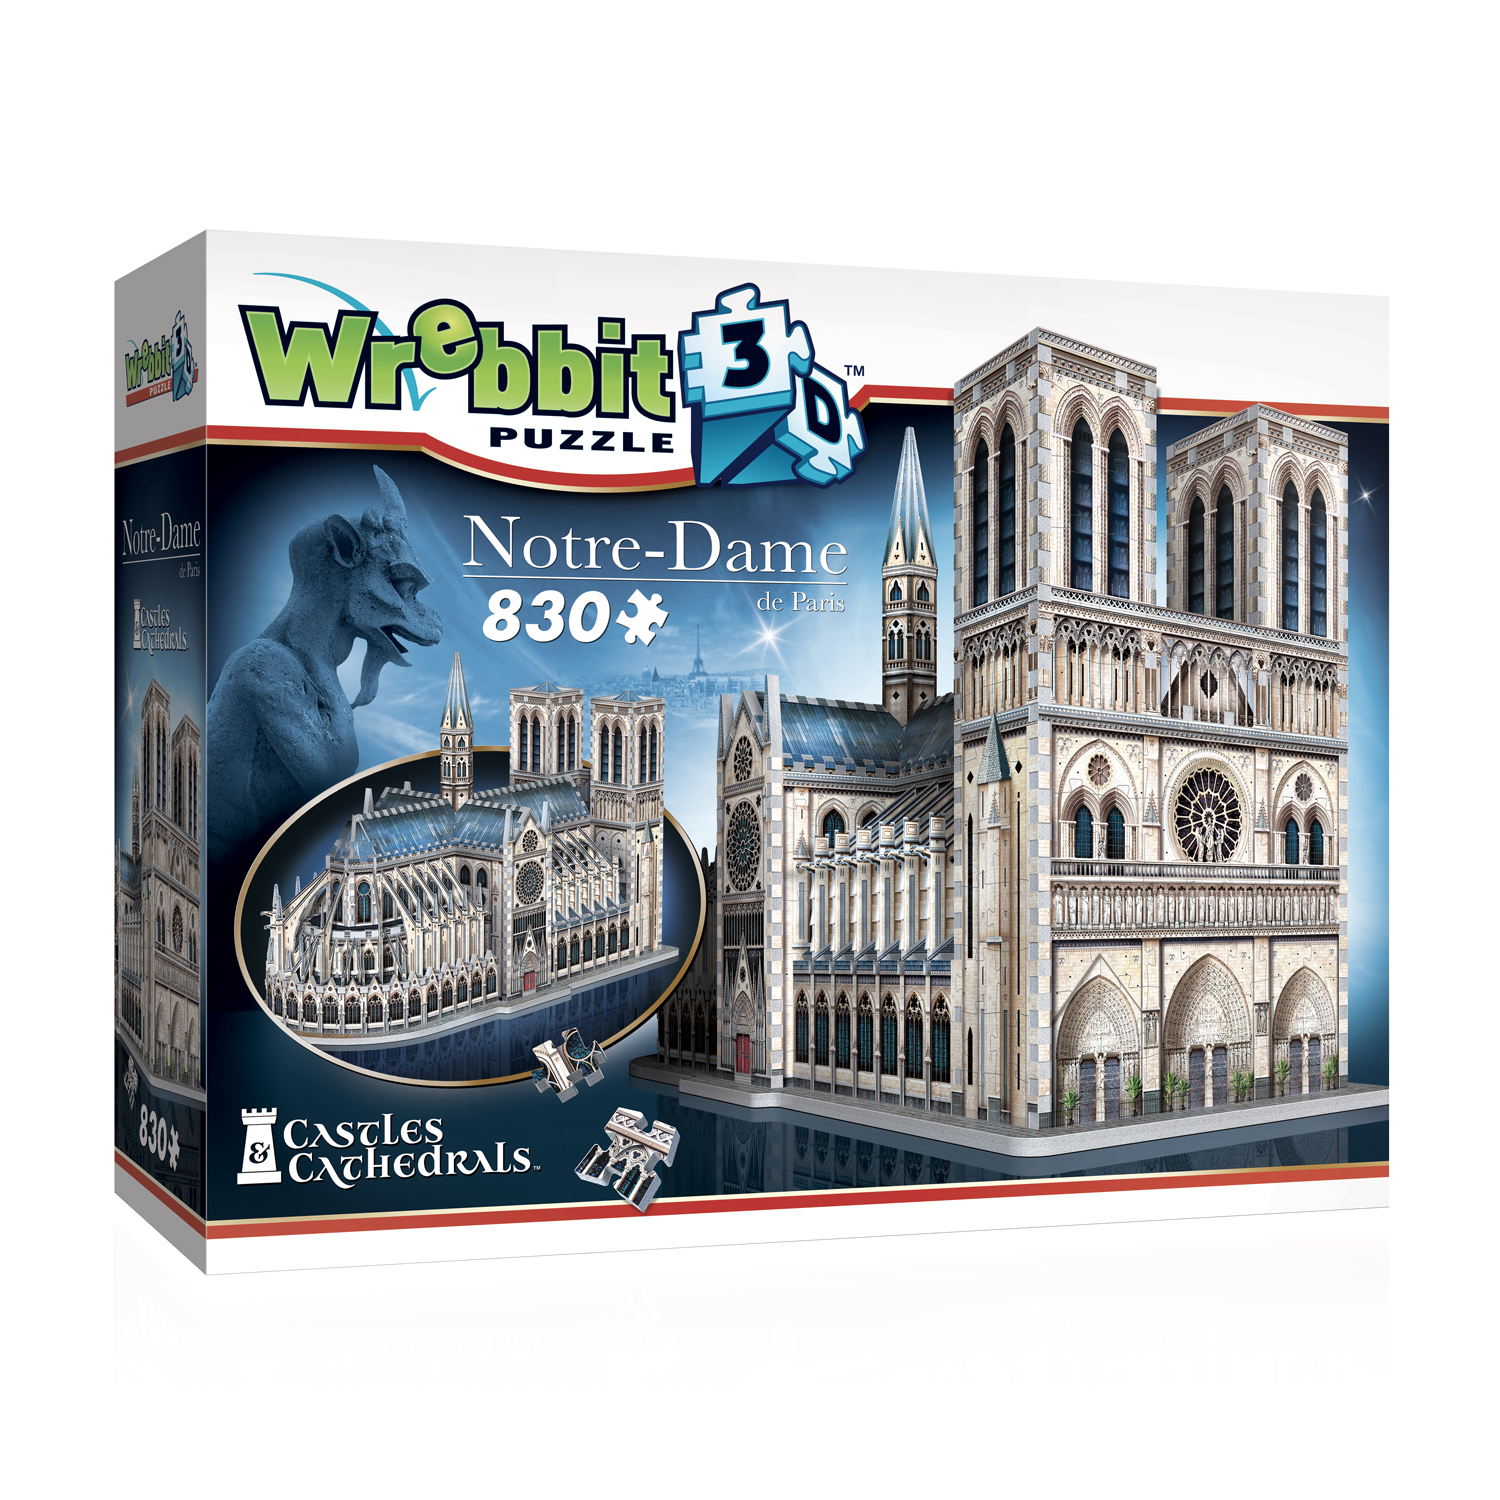 Puzz-3D Notre Dame de Paris Cathedral  952 pieces Puzzle Wrebbit 1996 